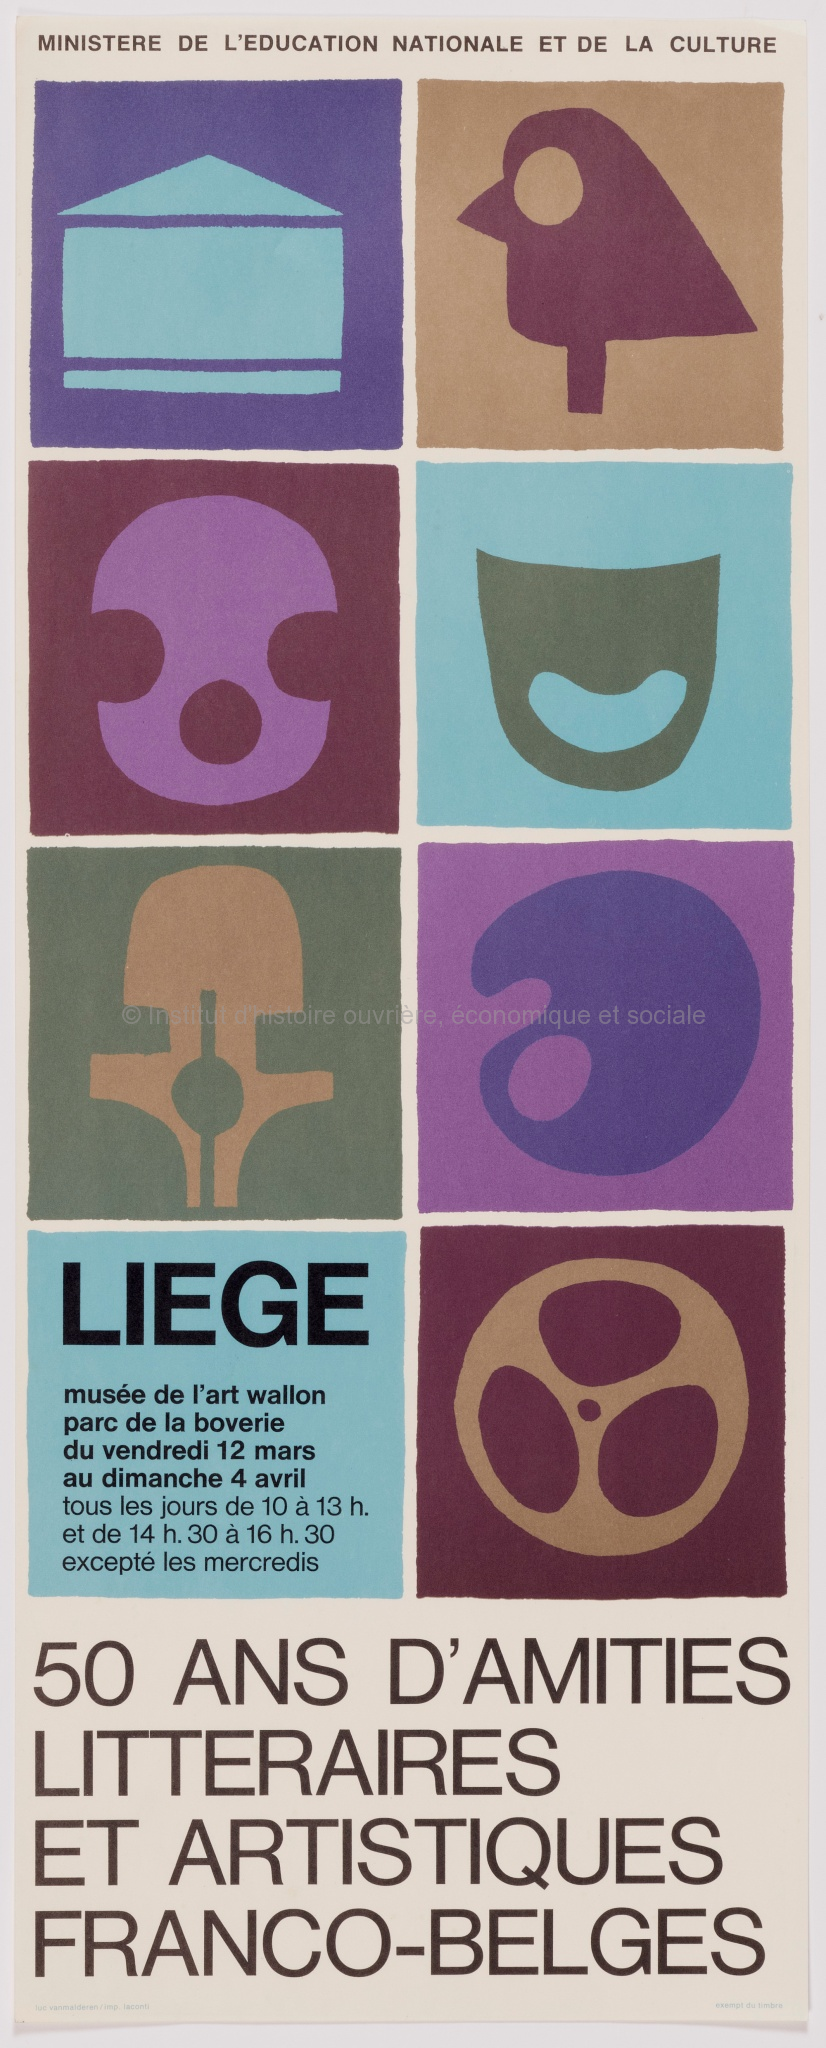 50 ans d'amitiés littéraires et artistiques franco-belges. Liège, Musée de l'art wallon